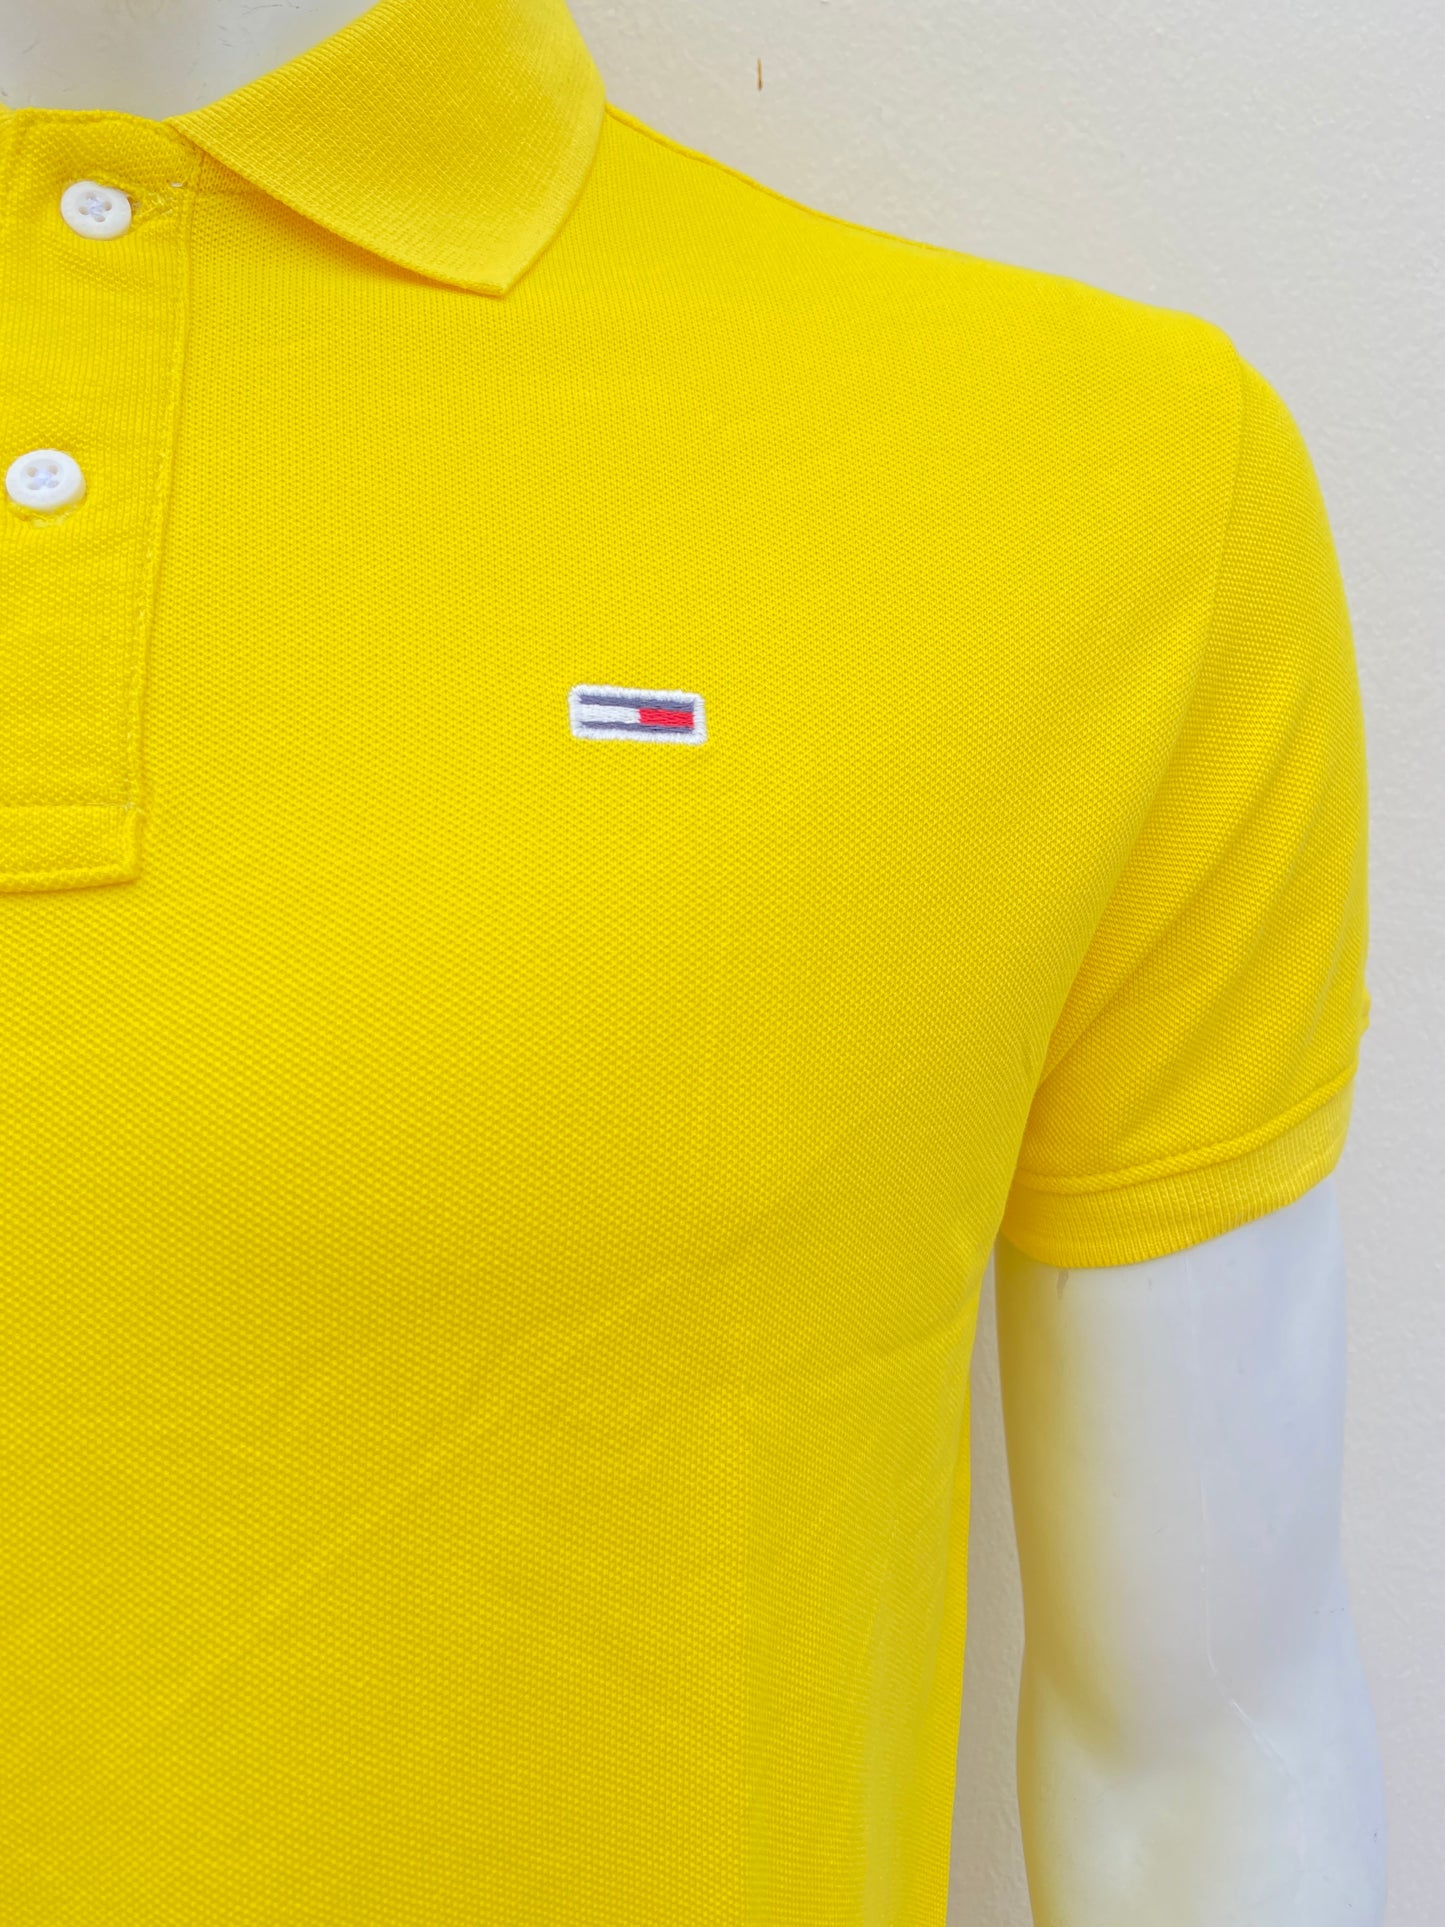 Polocher Tommy Hilfiger original amarillo con pequeño logotipo de la marca.